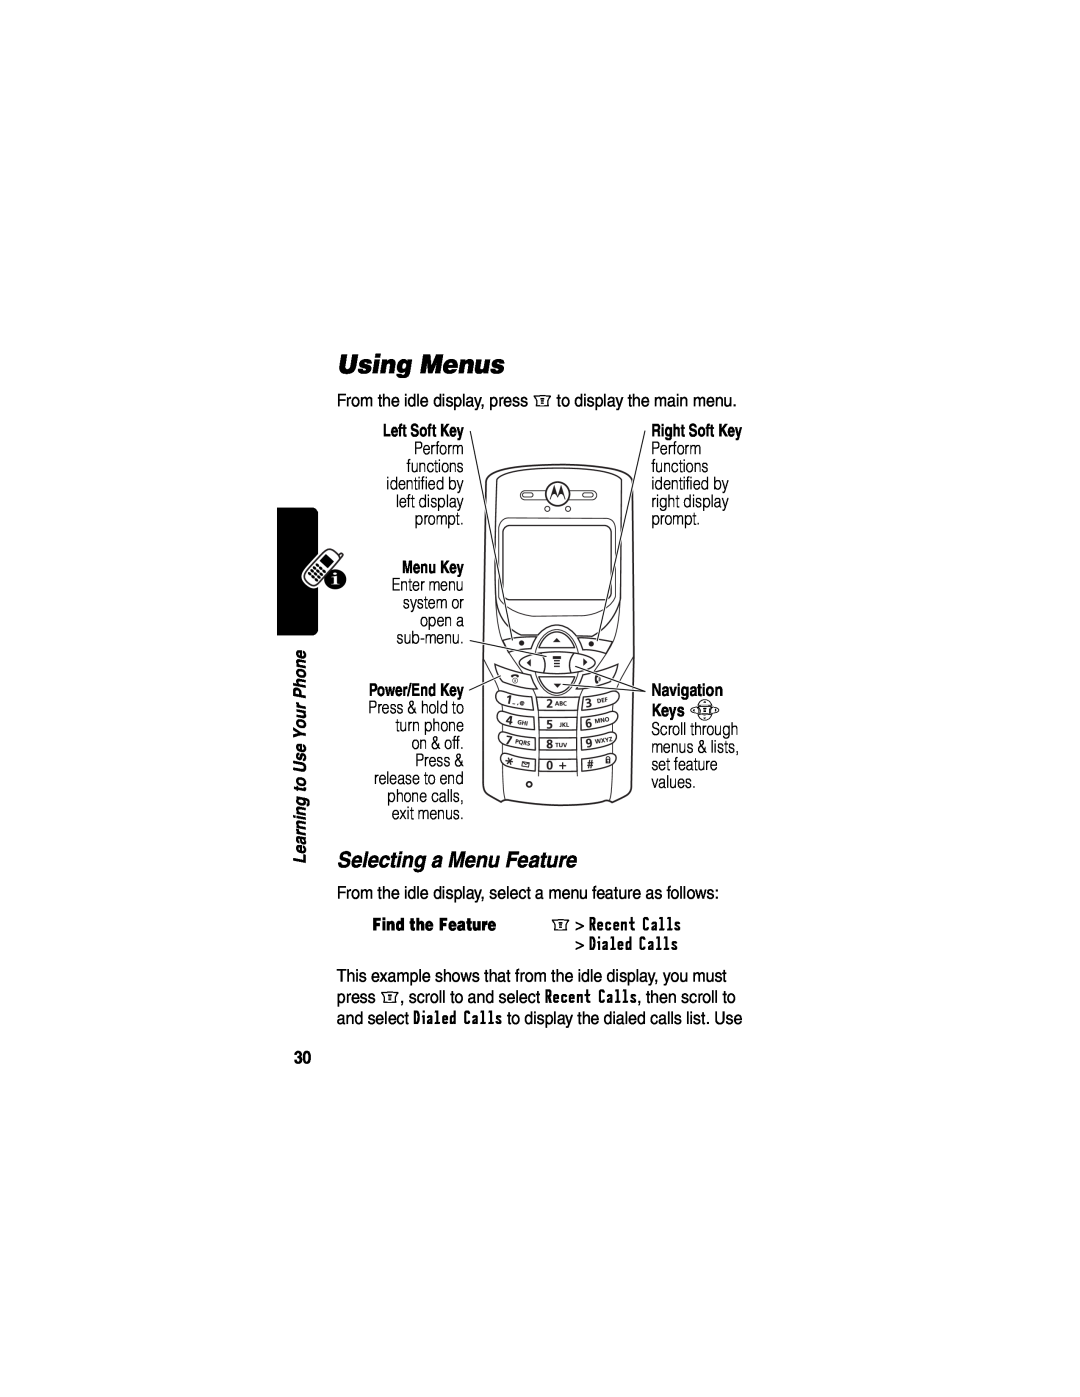 Motorola WIRELESS TELEPHONE manual Using Menus, Selecting a Menu Feature 